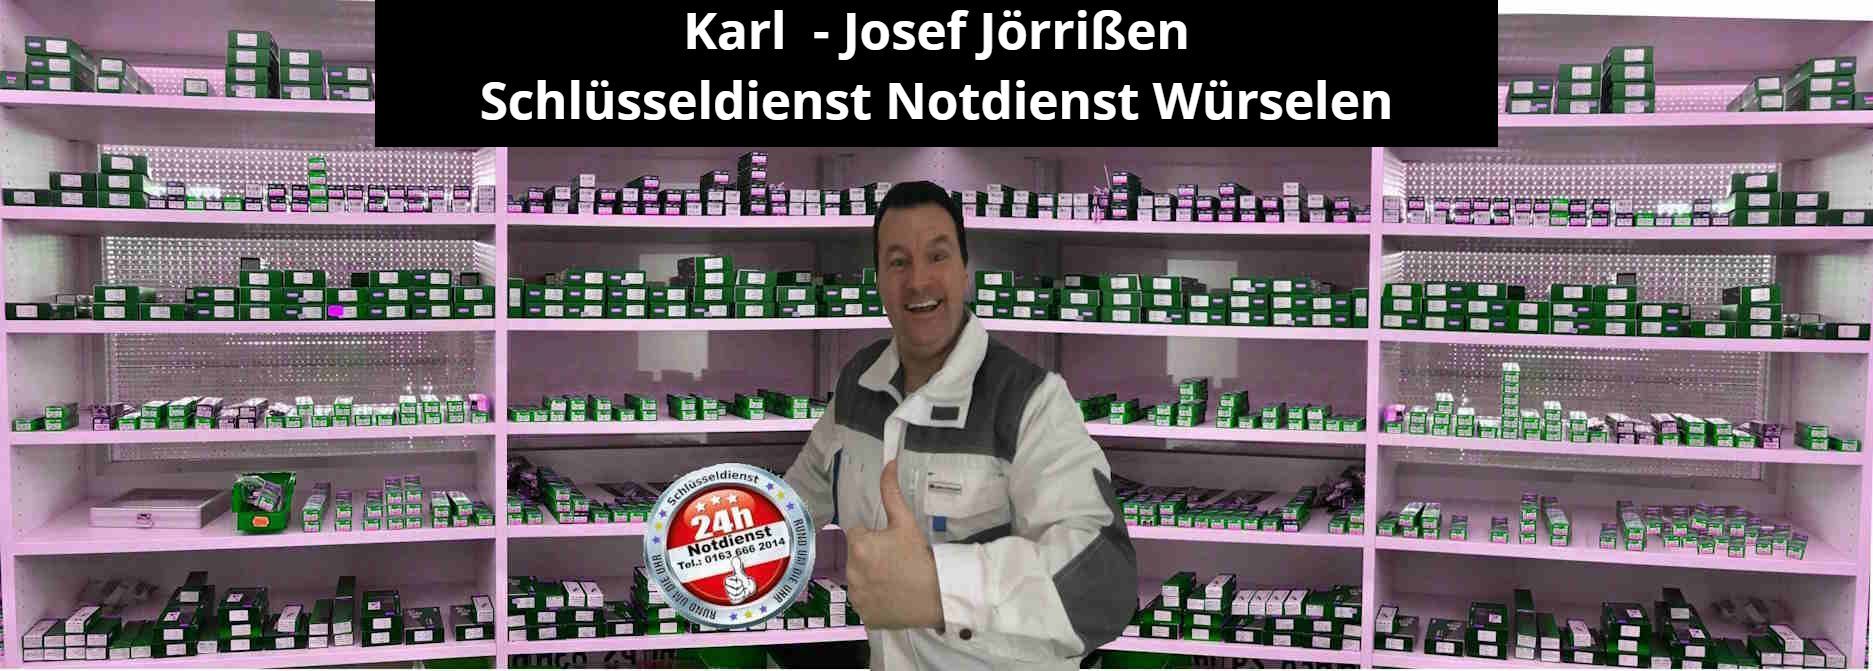 Das Foto zeigt Karl Josef Jörrißen - Schlüsseldienst Notdienst Würselen